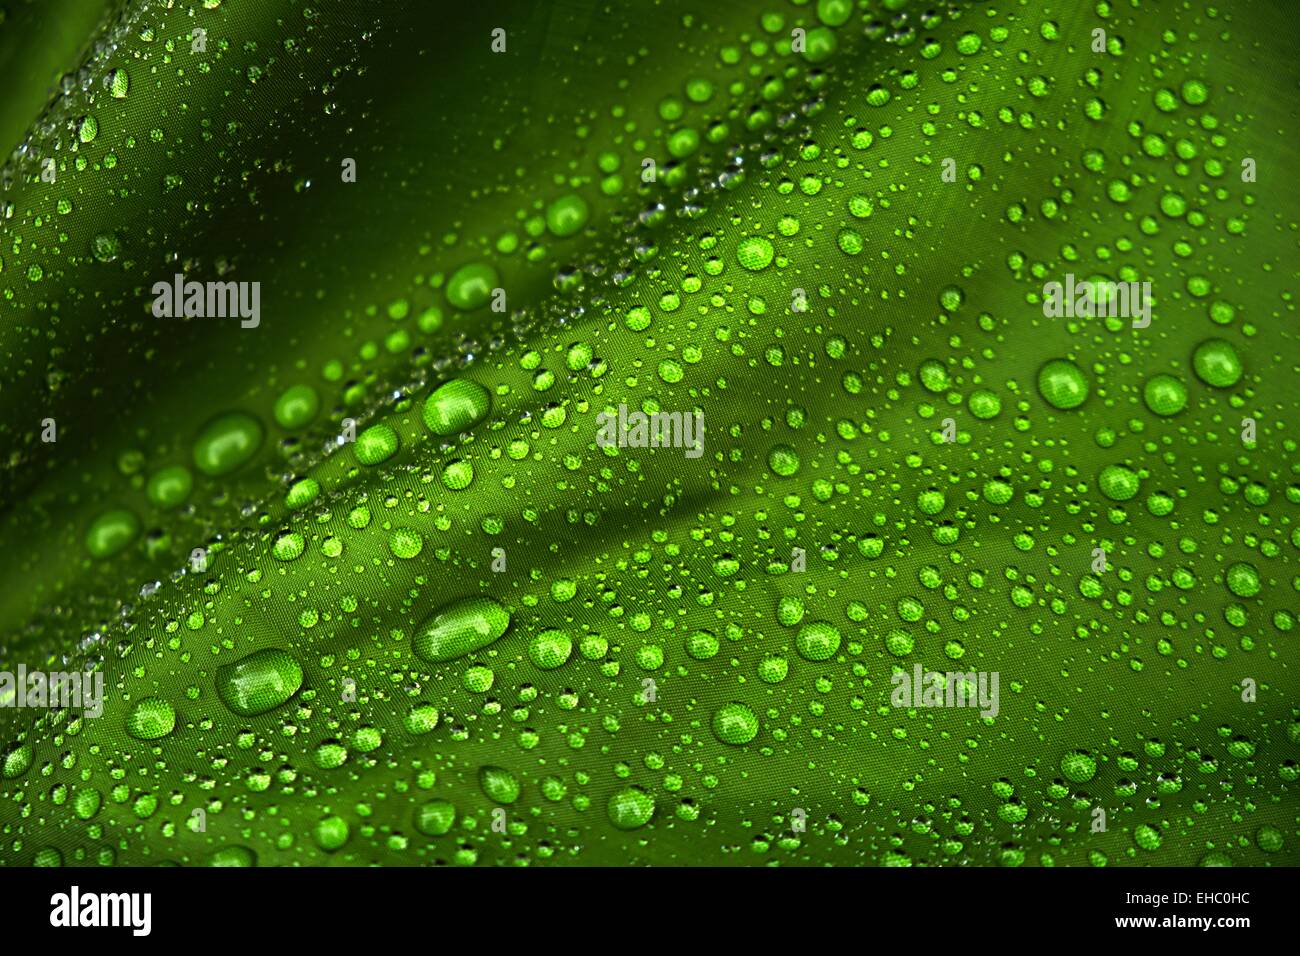 Les gouttelettes d'eau sur un fond de toile verte Banque D'Images